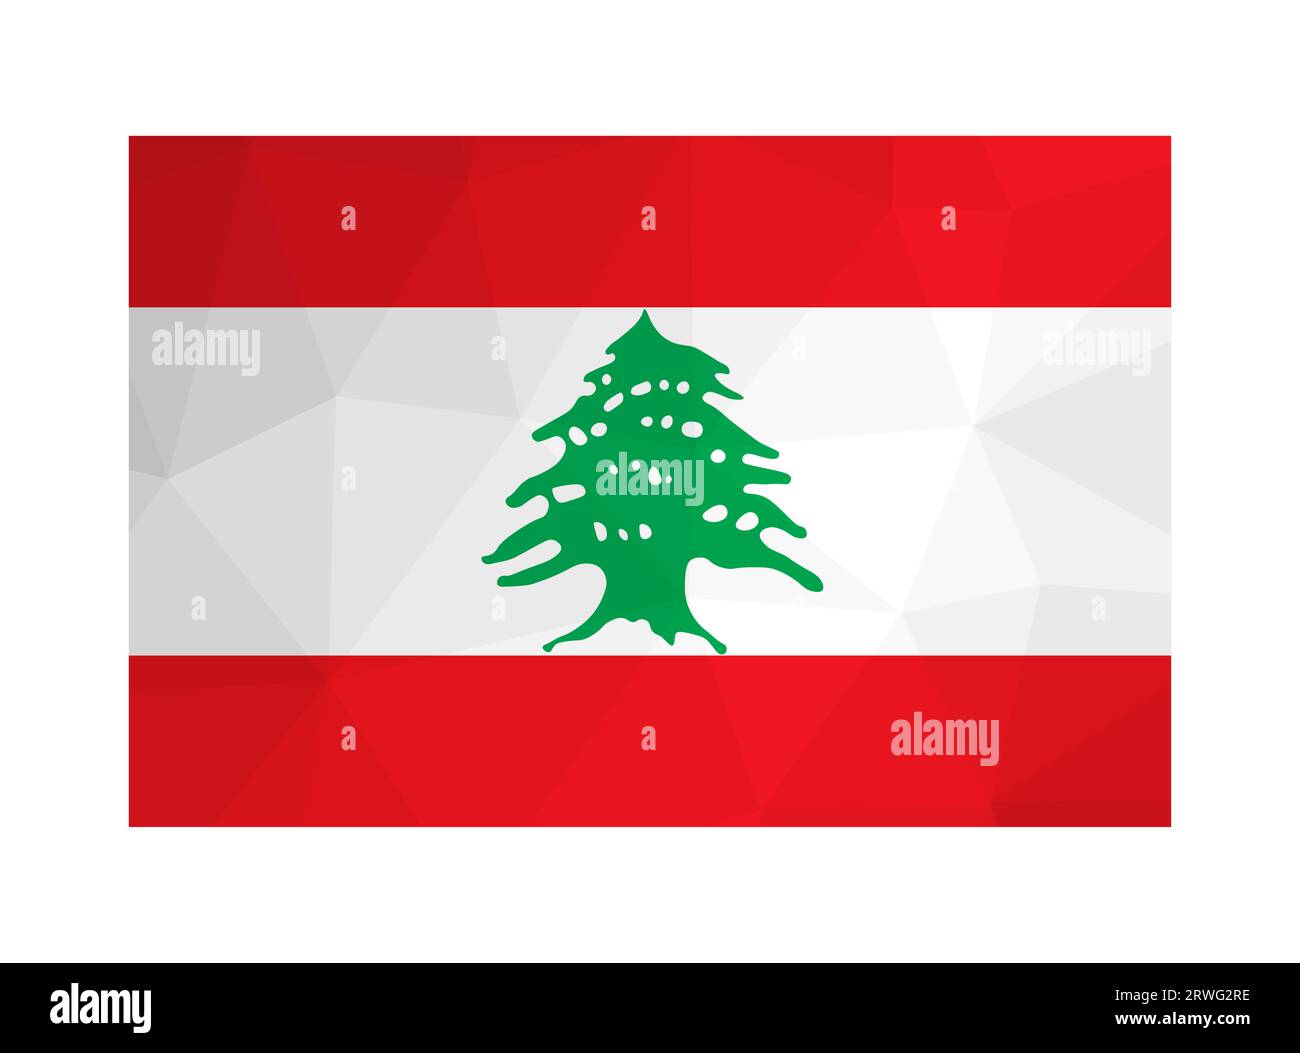 Illustration isolée vectorielle. Drapeau national libanais avec des bandes blanches, rouges et cèdre vert. Symbole officiel du Liban. Design créatif en poly bas Illustration de Vecteur